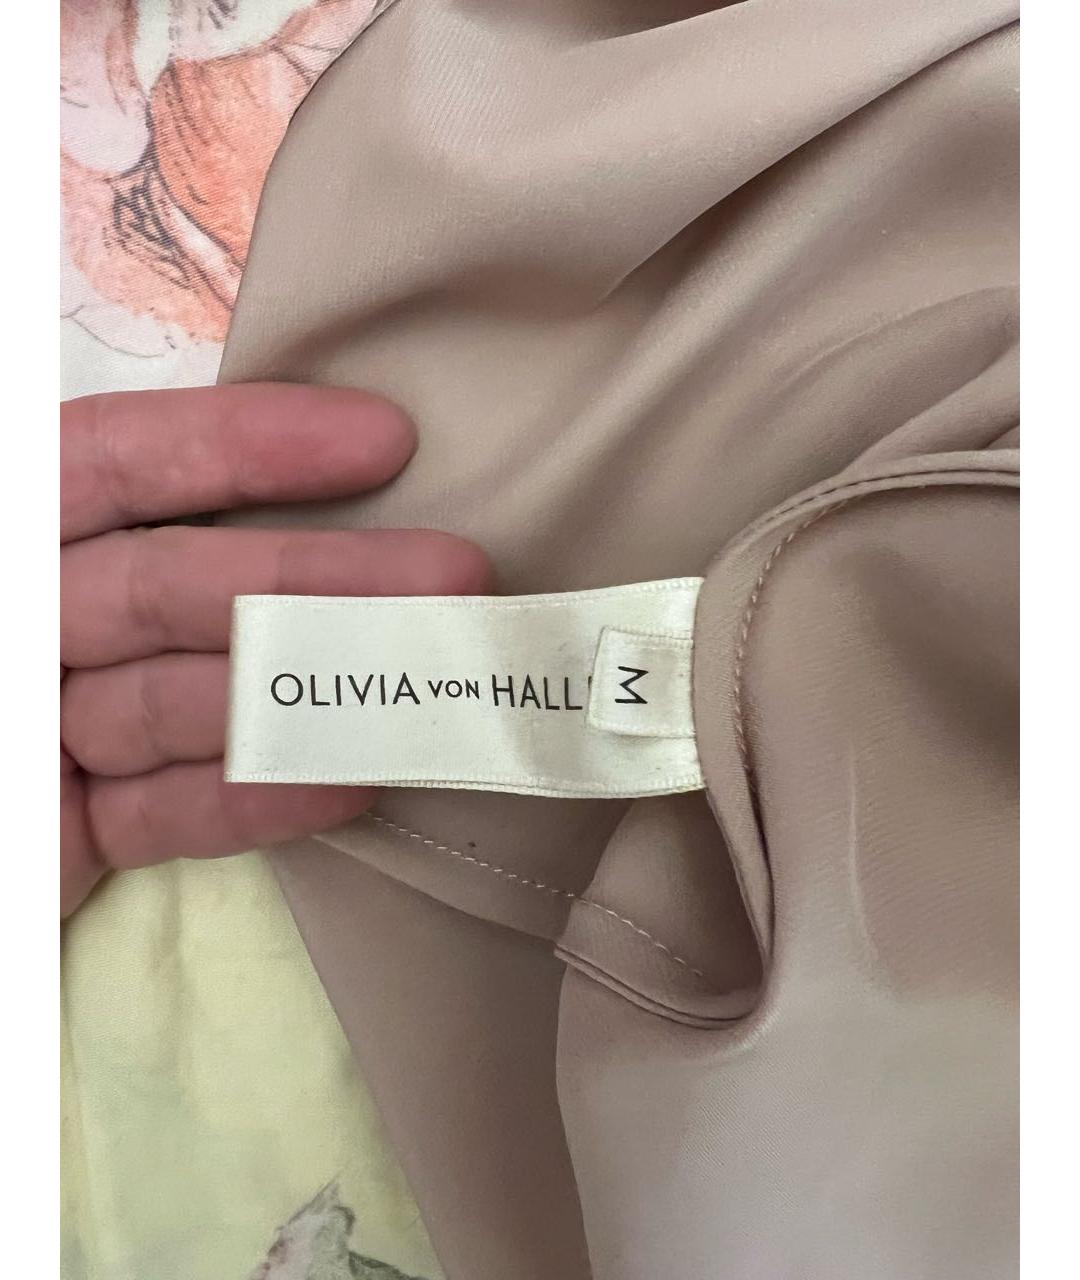 OLIVIA VON HALLE Розовая пижамы и сорочки, фото 3